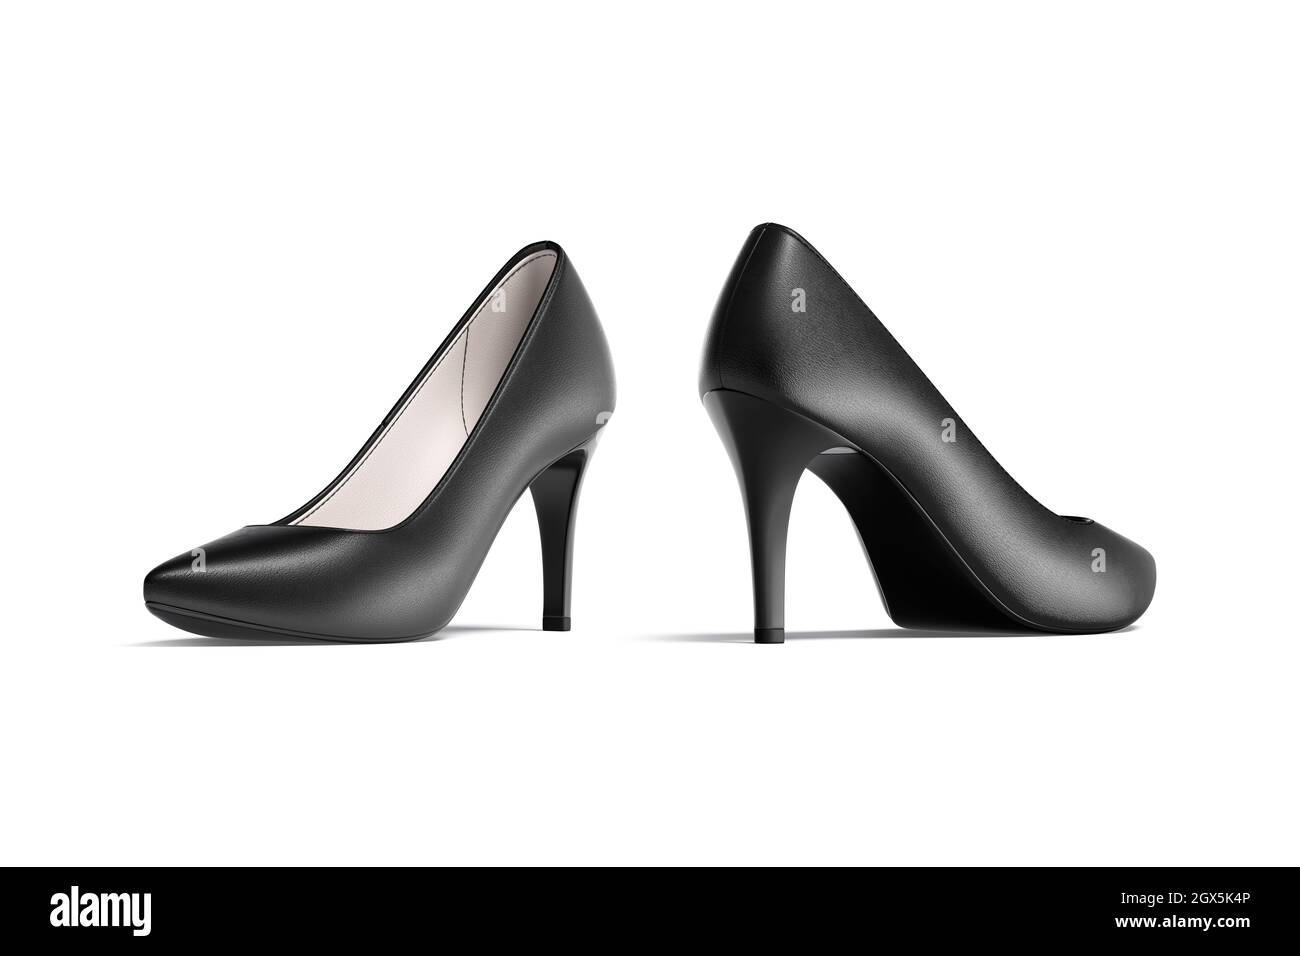 Negro en blanco zapatos de tacón alto mockup, vista de mitad de vuelta, posterior lateral, 3D renderizado. Equipación vacía para mujer para un look de vestir informal, aislada. Borrar leath Fotografía